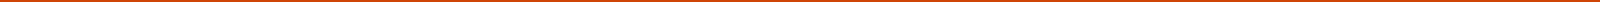 Oranje onderbrekingsstreep - Kunst collectie van HDVcollect